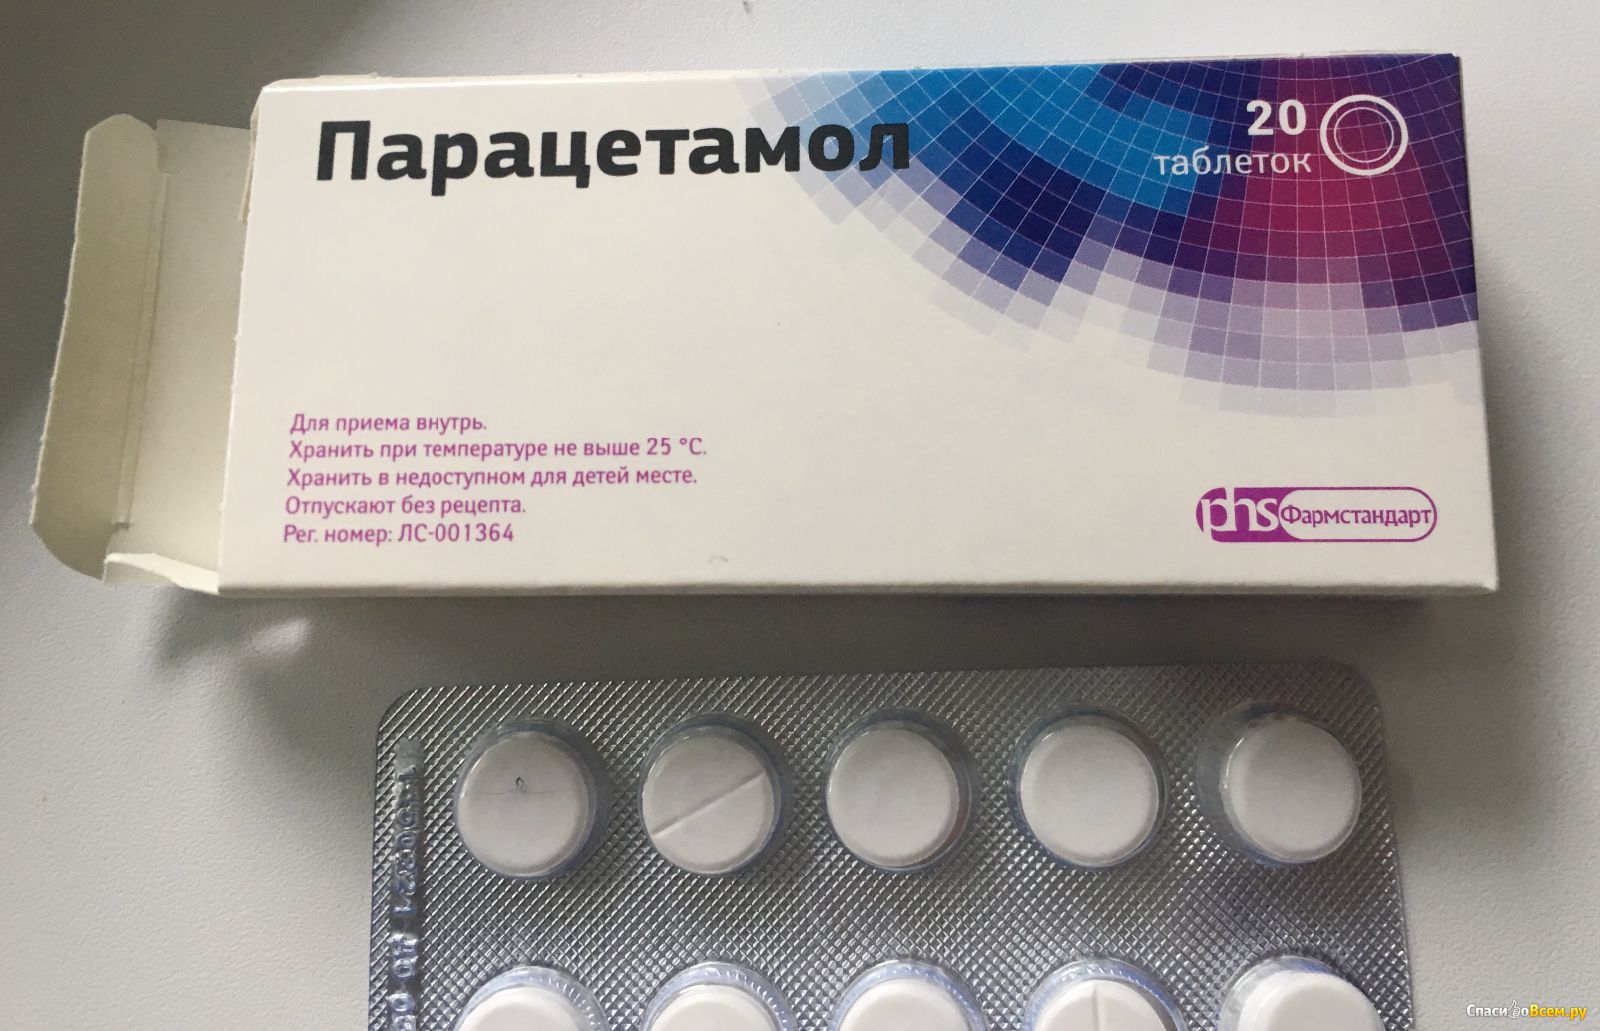 Можно ли от головной боли выпить парацетамол. Красавит таблетки. Парацетамол табл. Как выглядит таблетка парацетамола. Китайский парацетамол в таблетках.